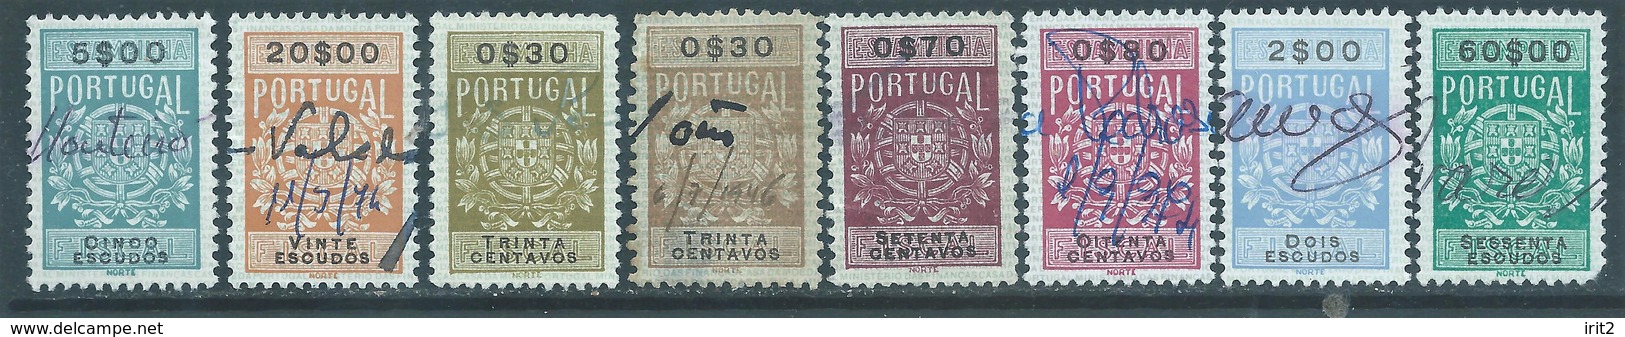 PORTUGAL Portogallo,1878 Revenue Stamps Tasse Taxes,Used - Usati